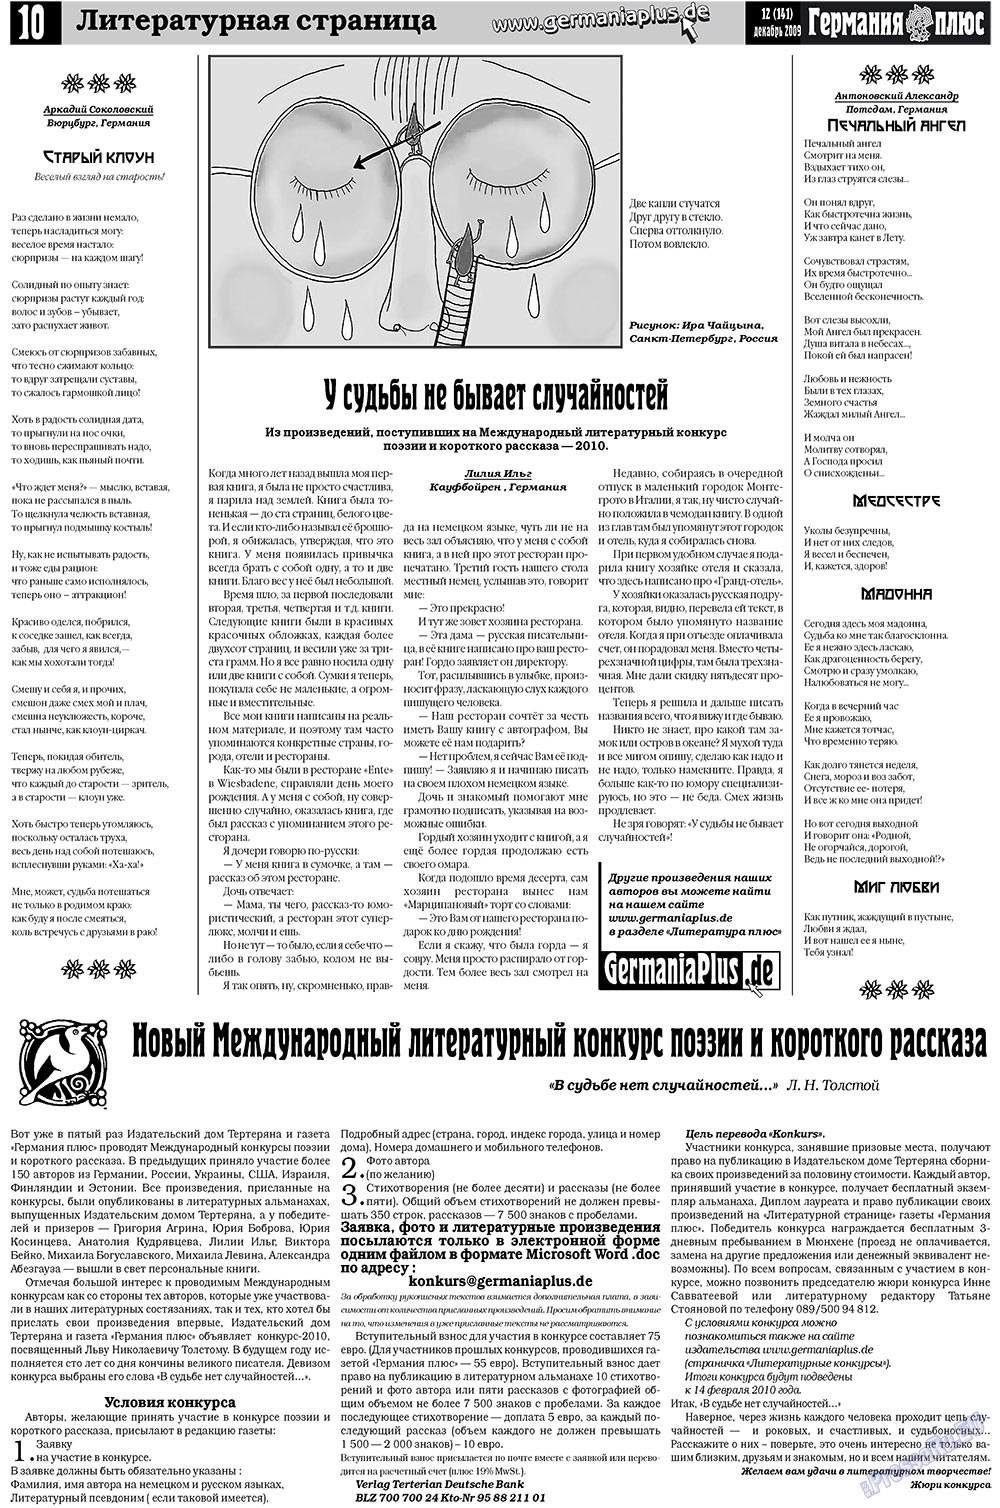 Германия плюс (газета). 2009 год, номер 12, стр. 10